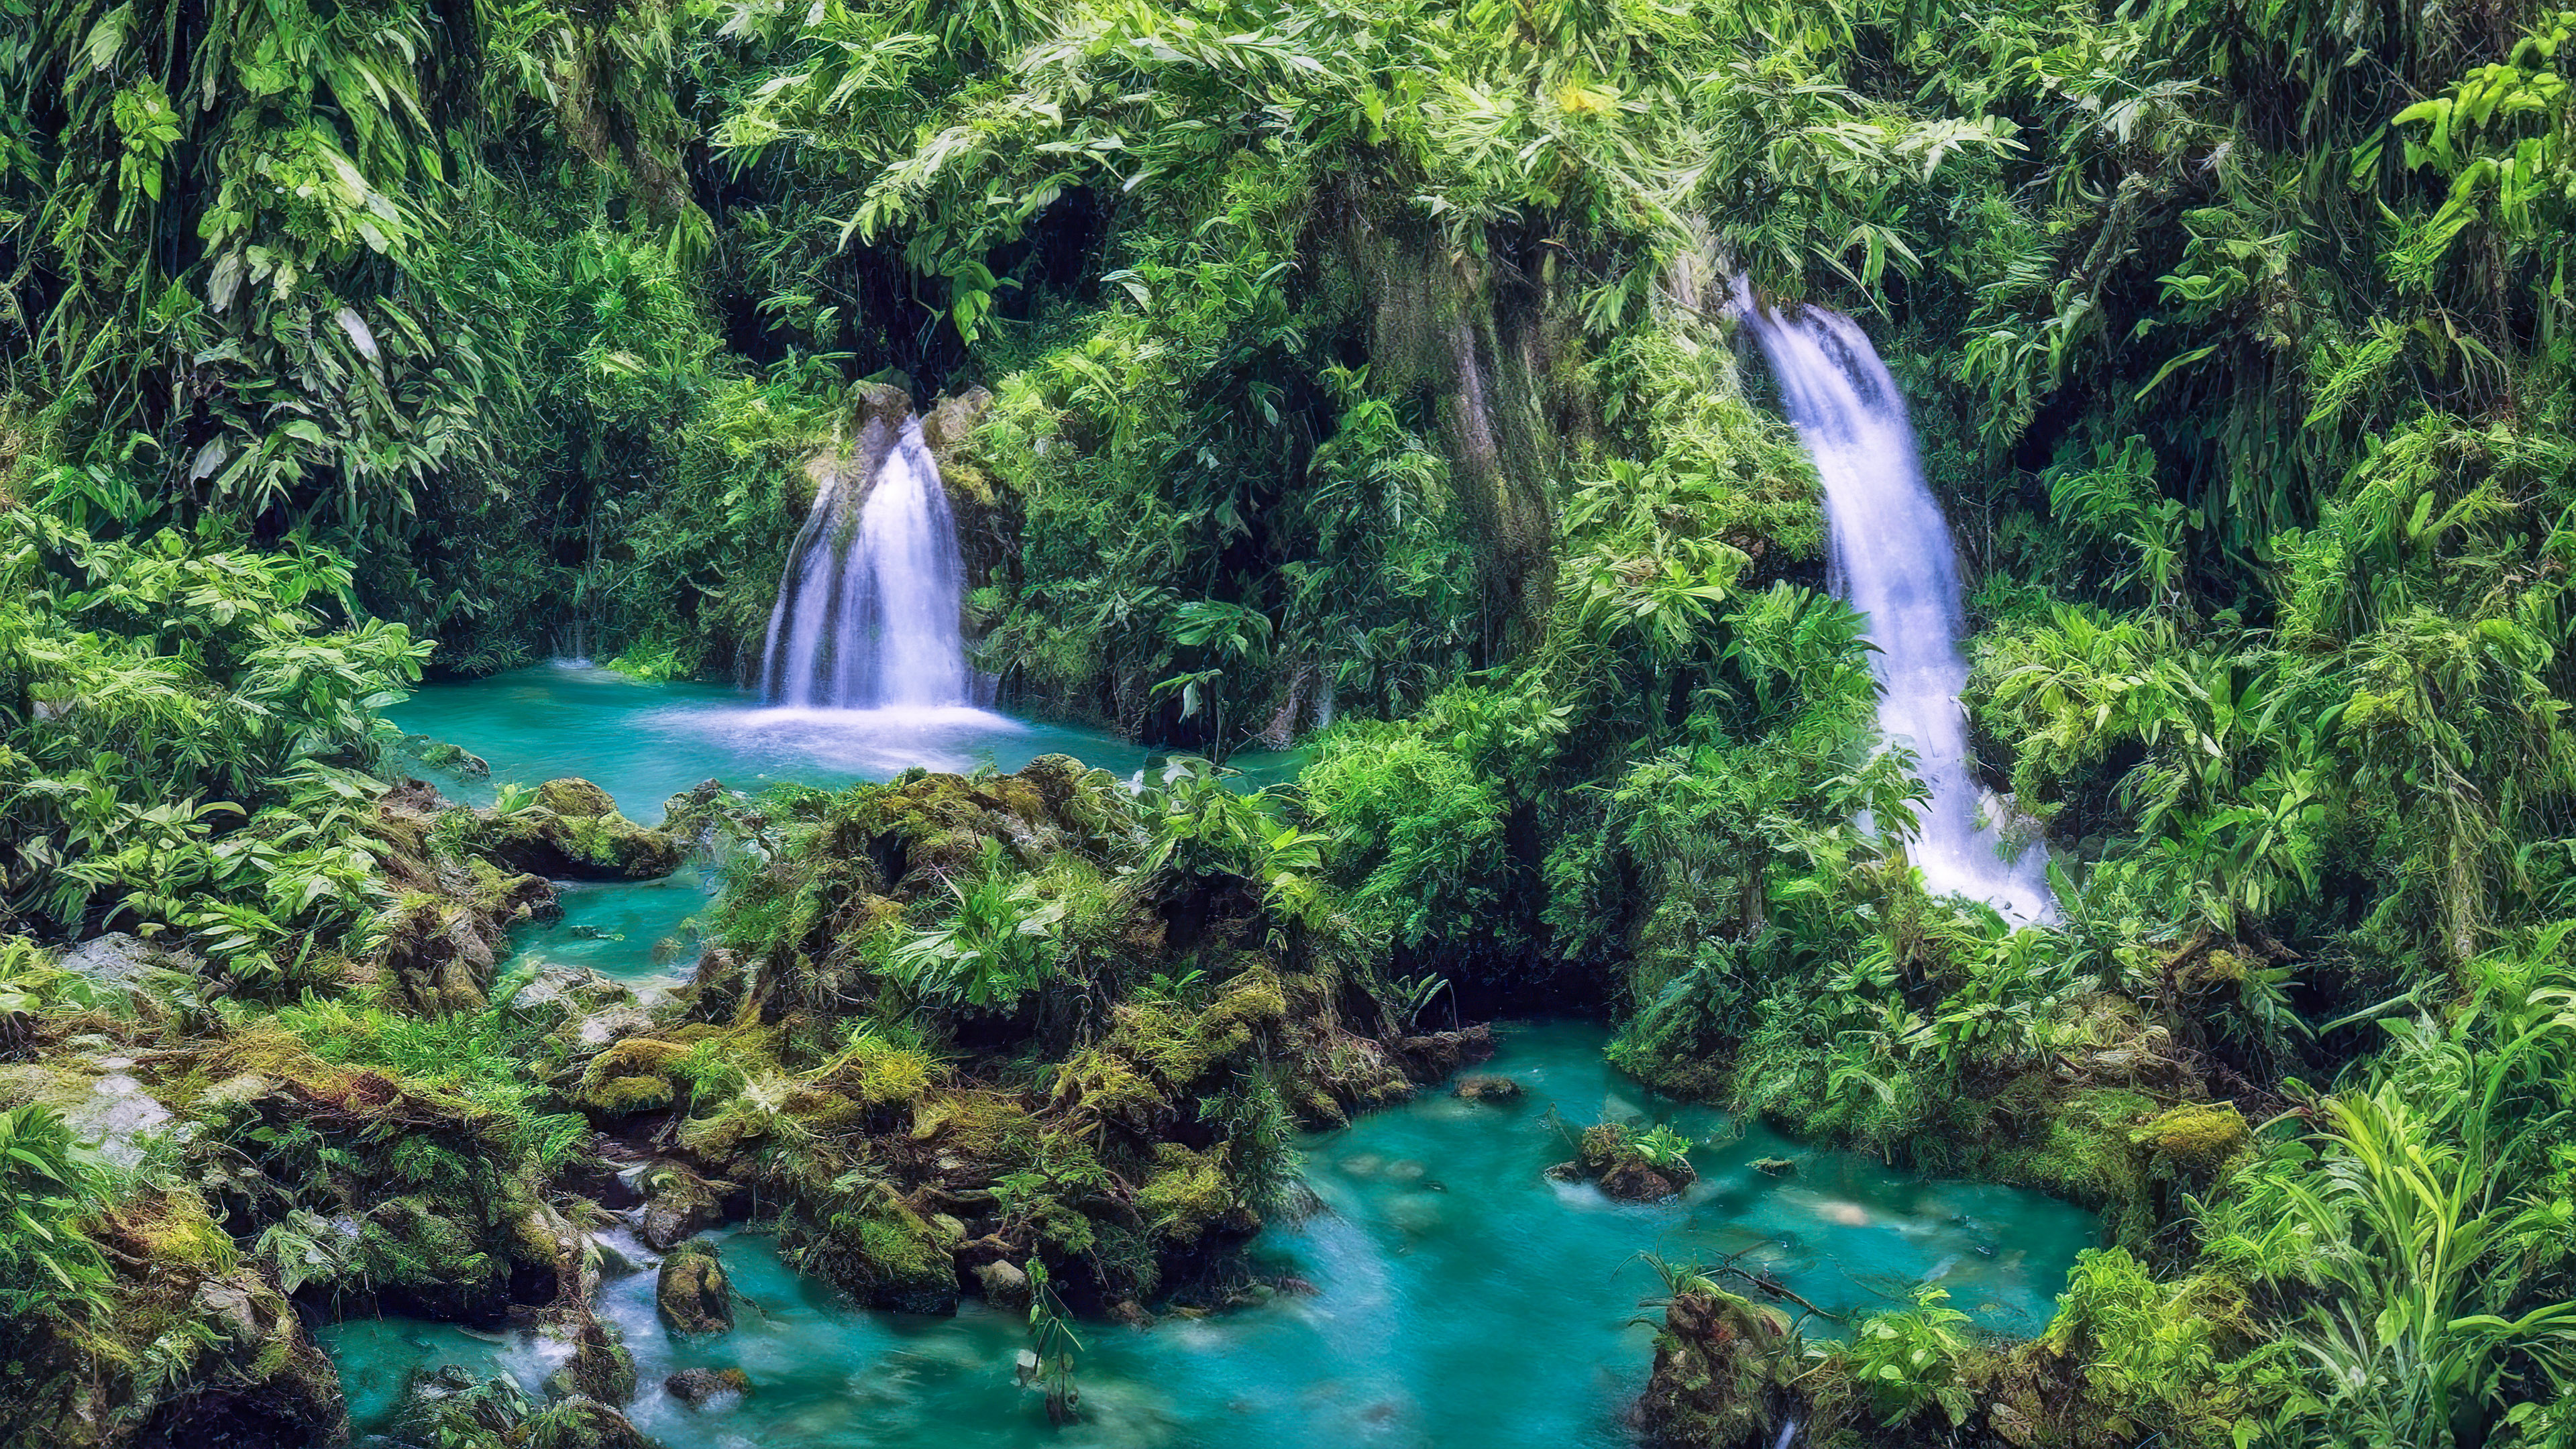 Faites l'expérience de l'attrait de notre fond d'écran de belle cascade, présentant une cascade enchanteresse cachée au plus profond de la forêt tropicale verdoyante.